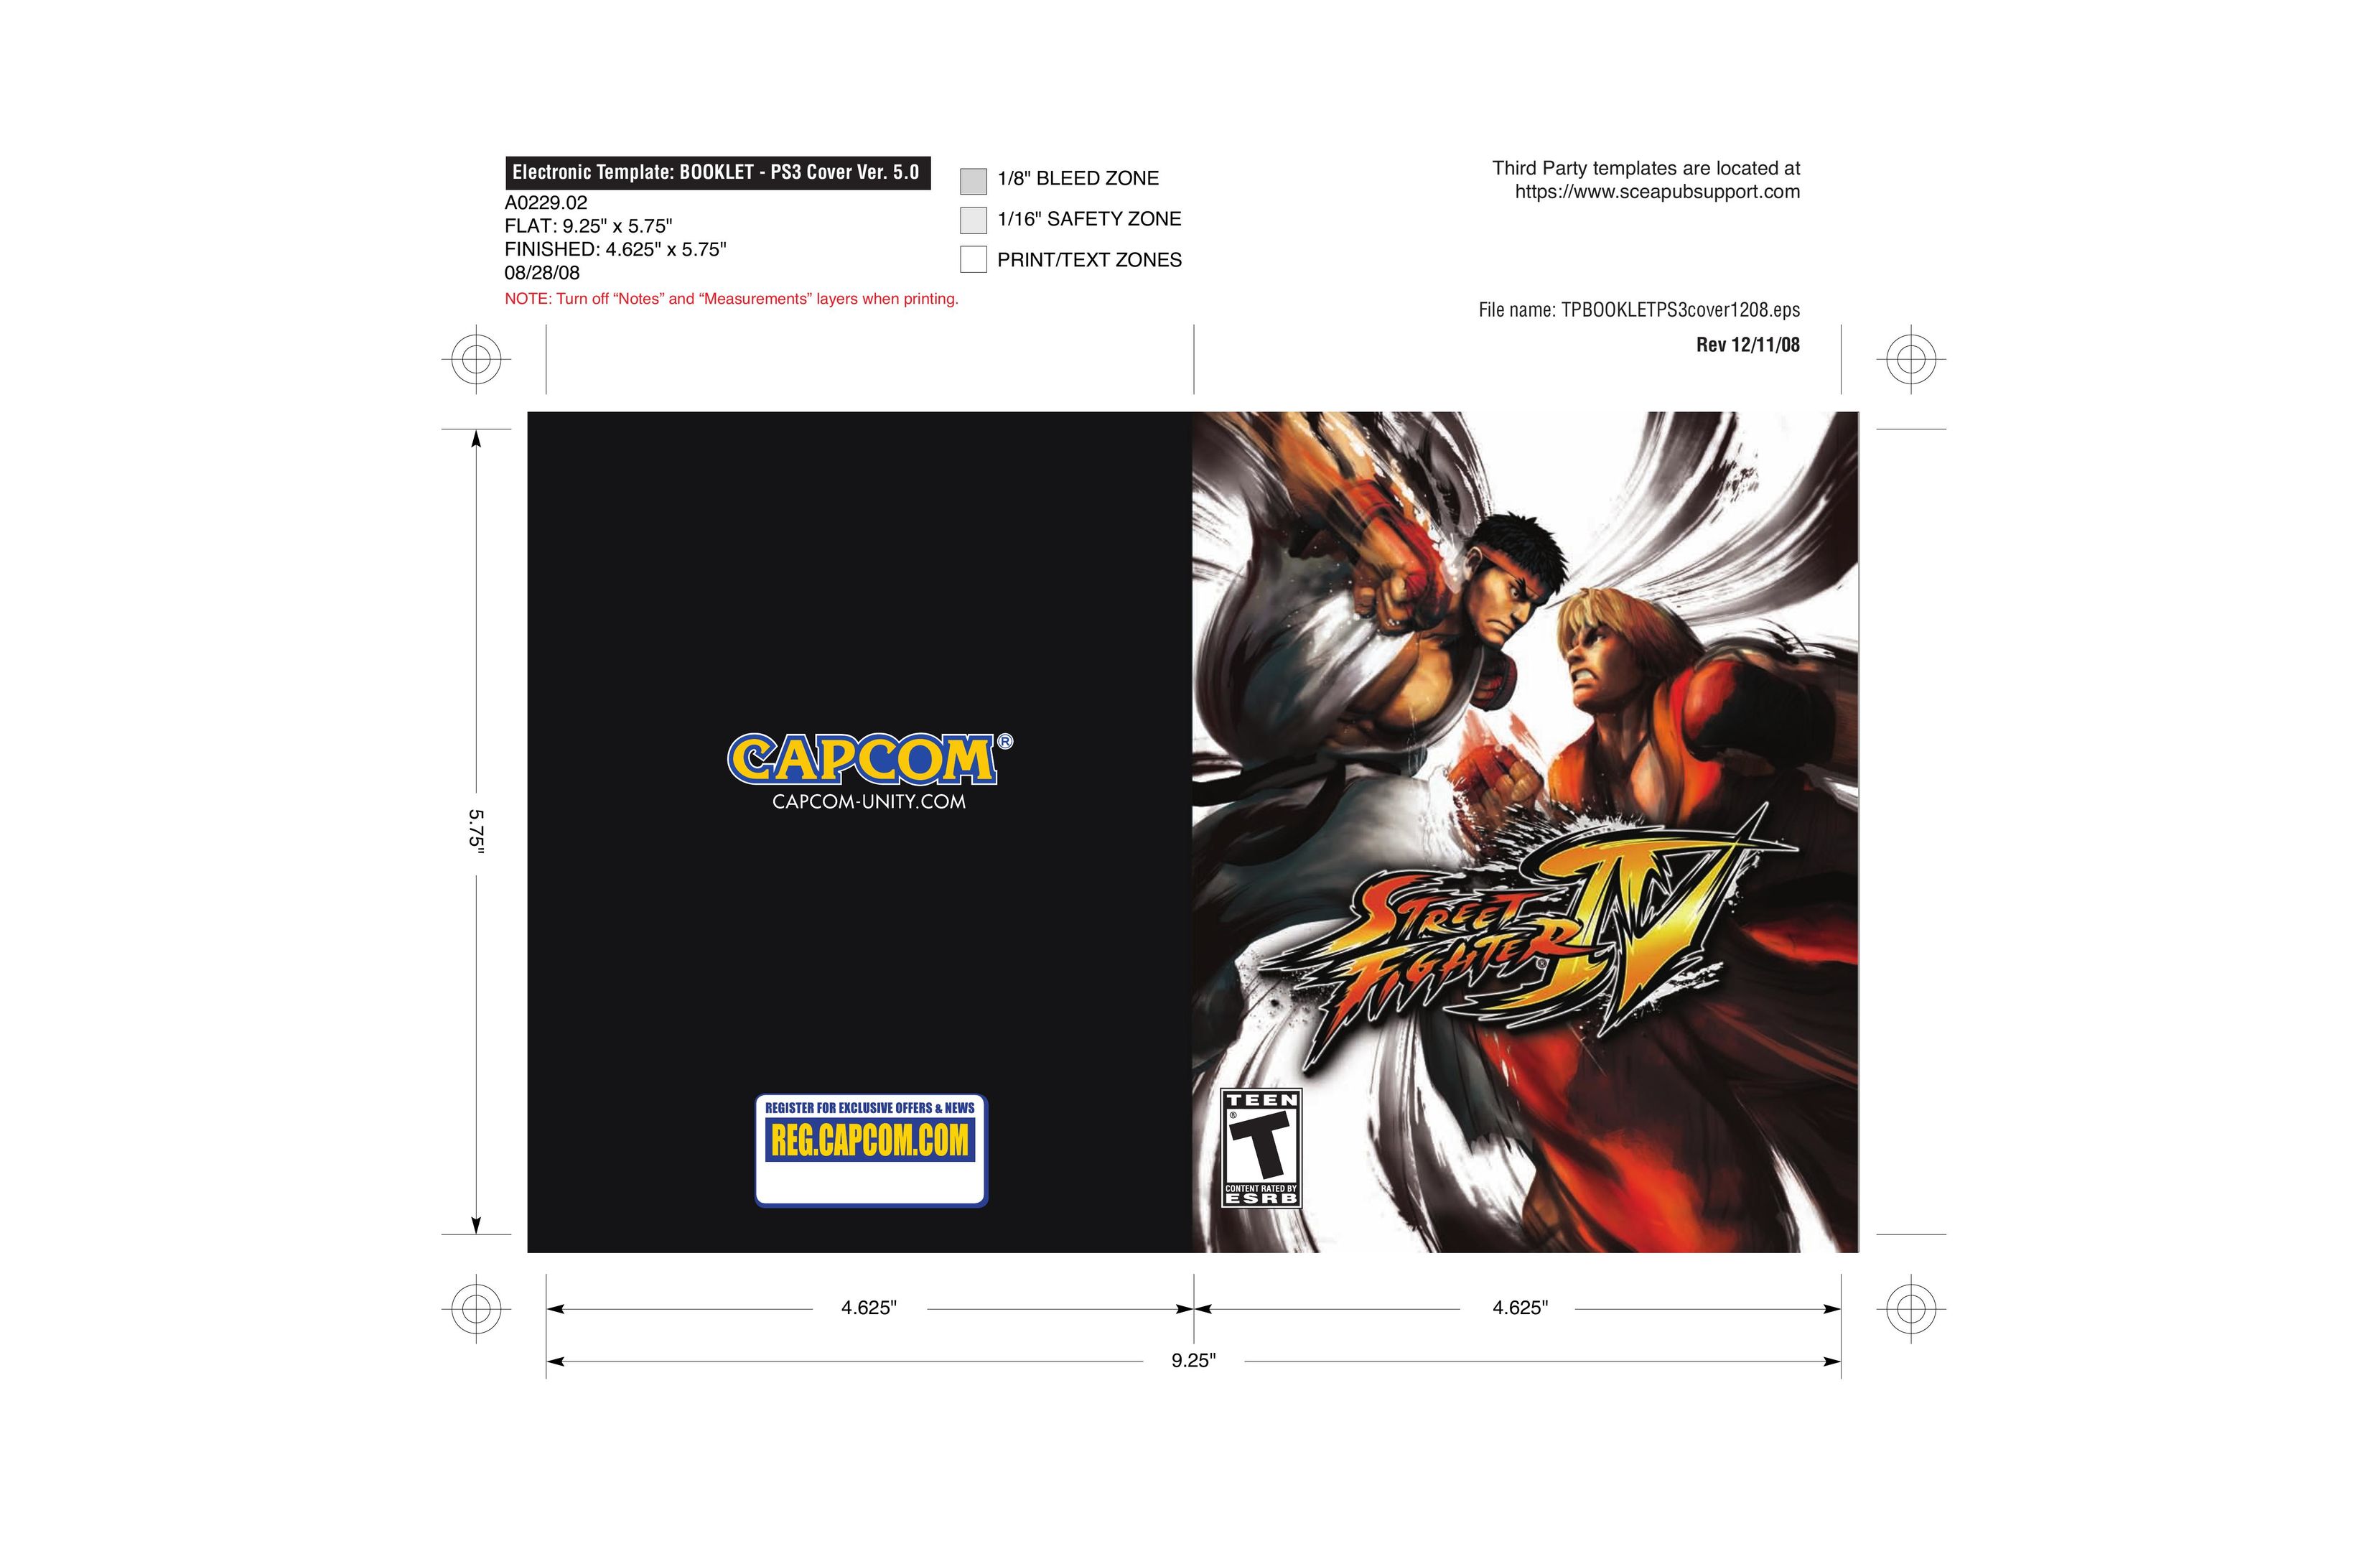 Capcom 13388340231 Video Games User Manual